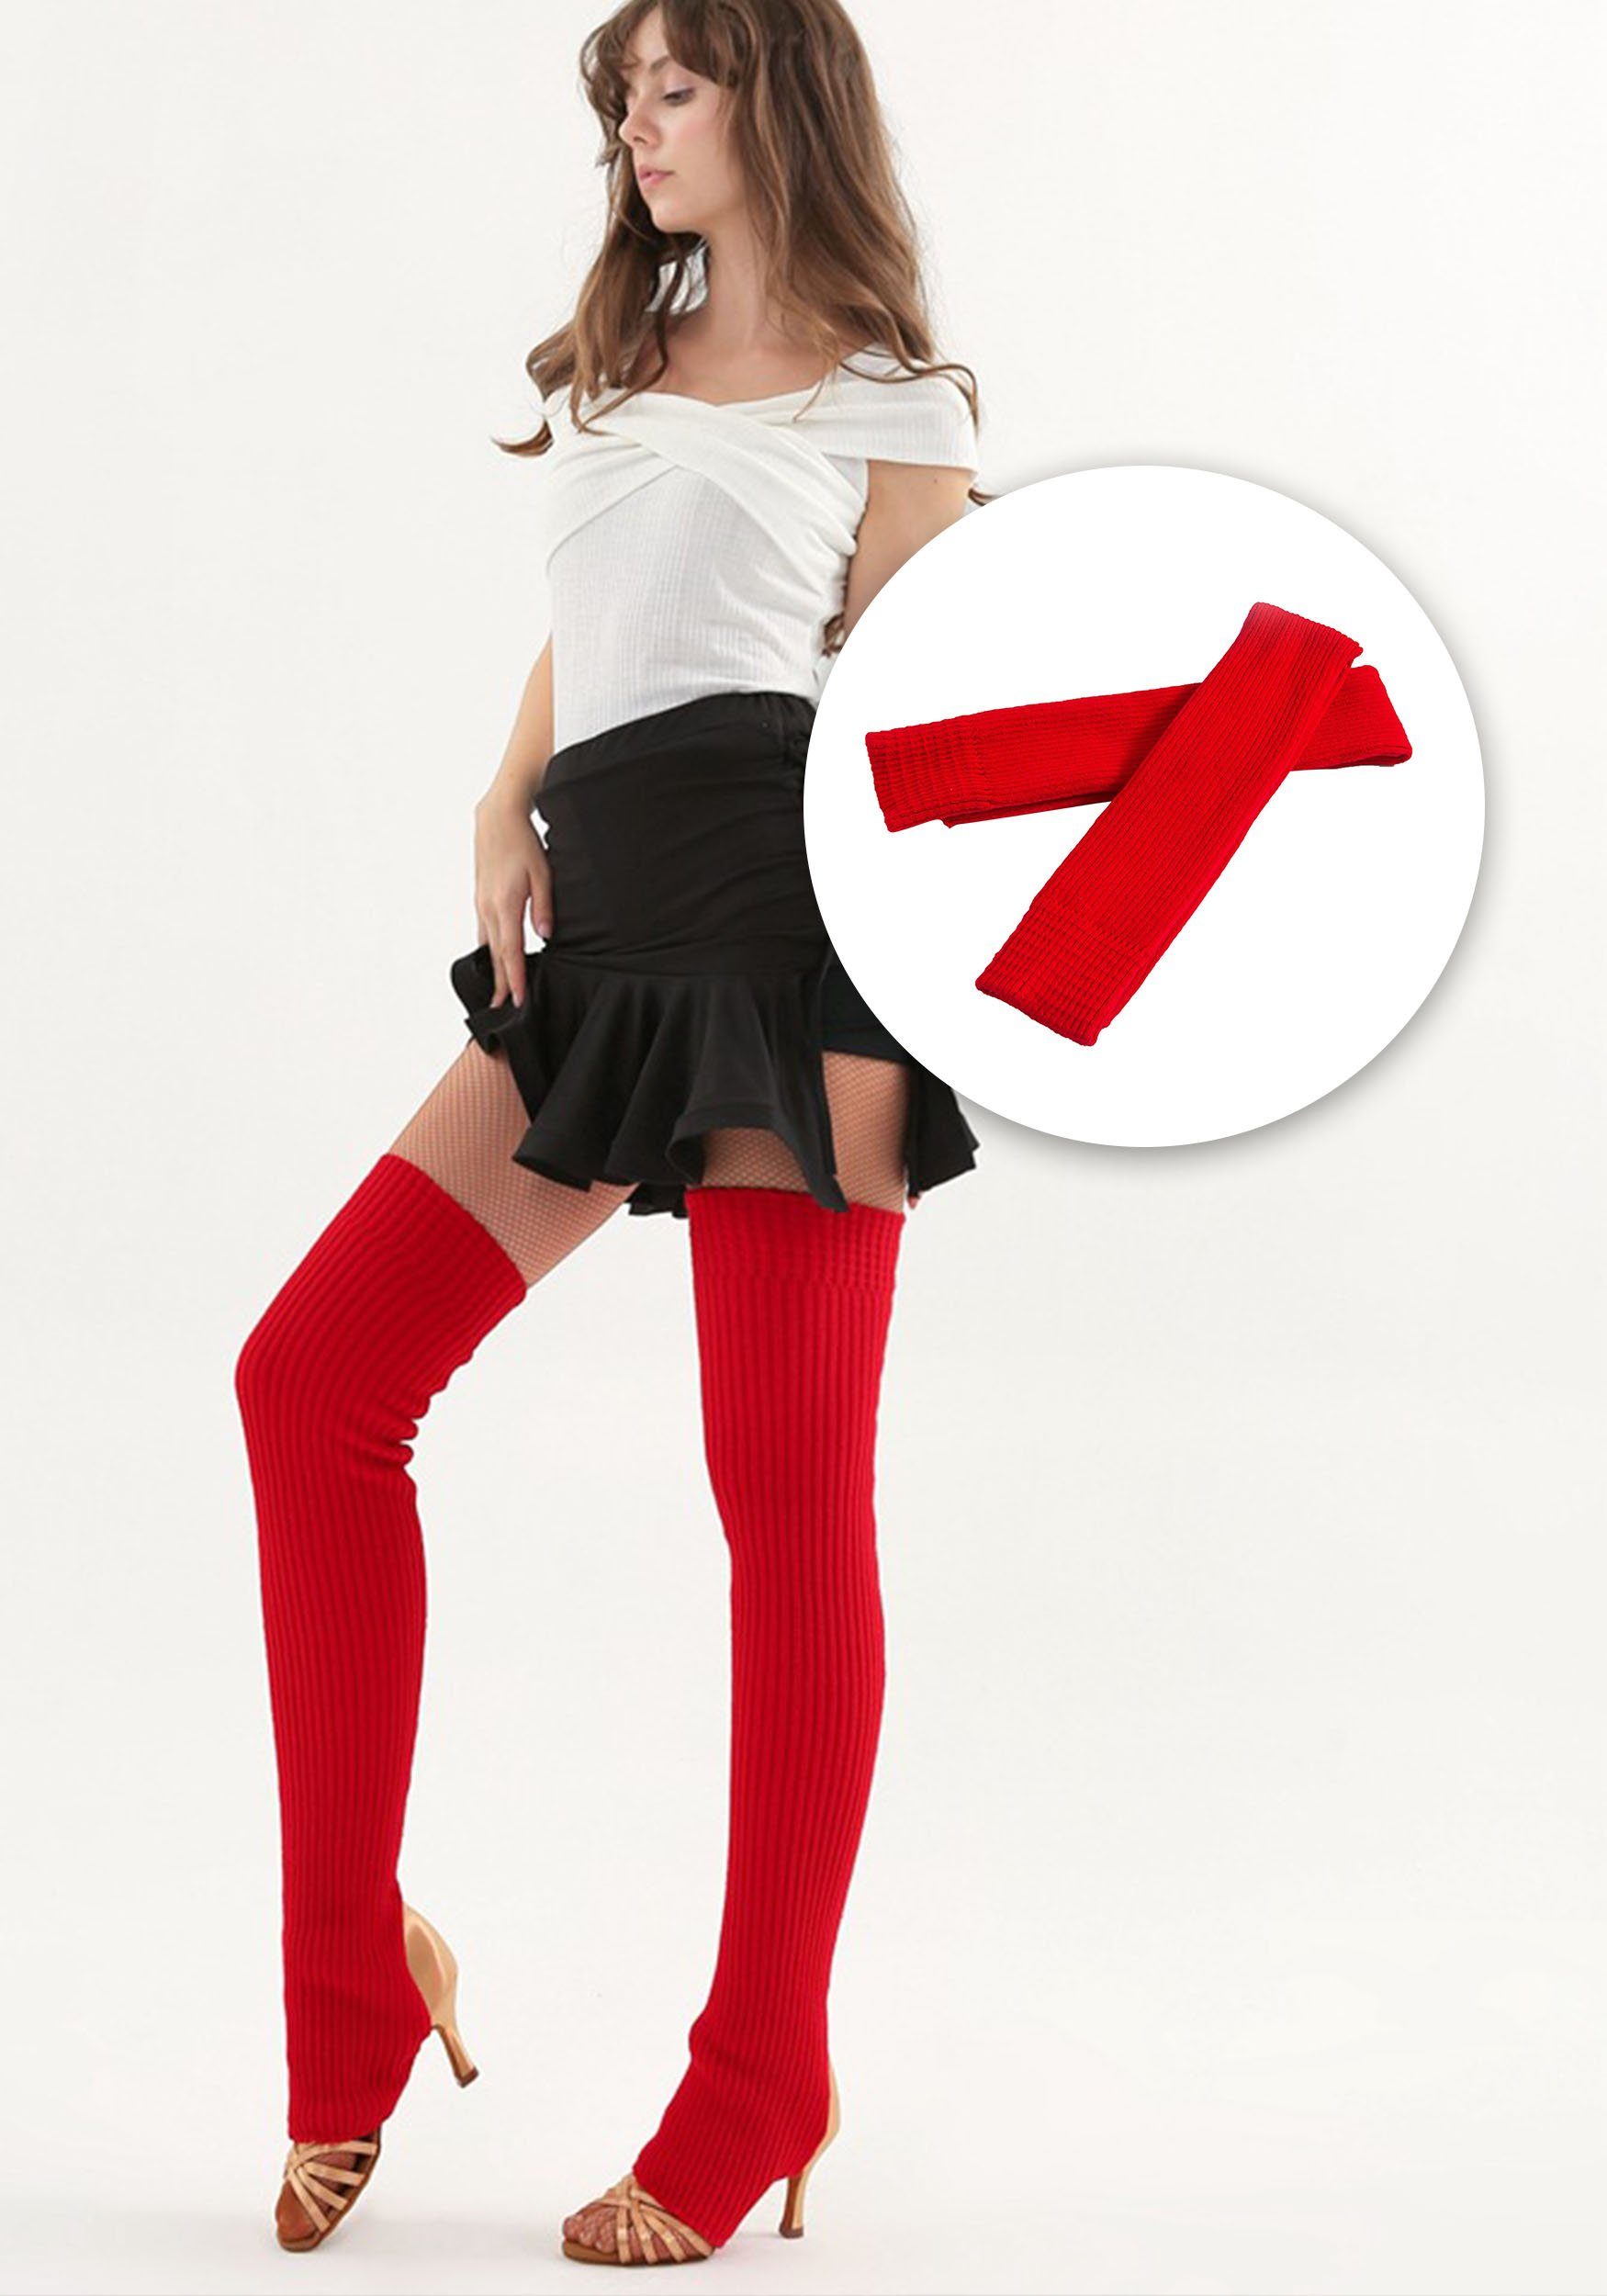 MAGICSHE Kniestrümpfe Lange Stretch-Stricksocken Ballett, Beinstulpen über Knie für Damen (1-Paar) Rot